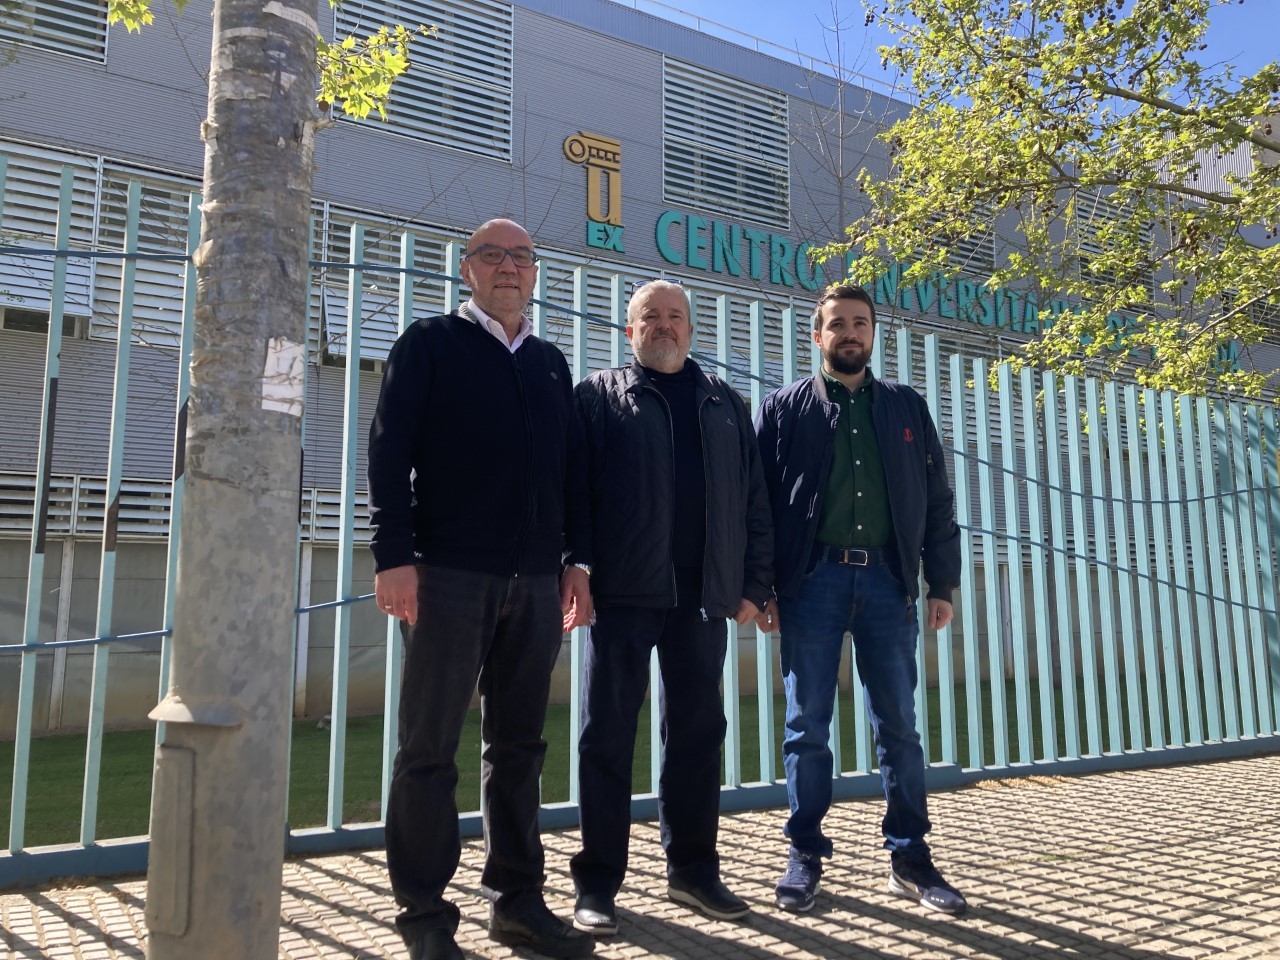 Julin Mora Aliseda, Eduardo Blanco Morcillo y Blanco Ucls, promotores del proyecto, en una imagen tomada en la Universidad de Extremadura